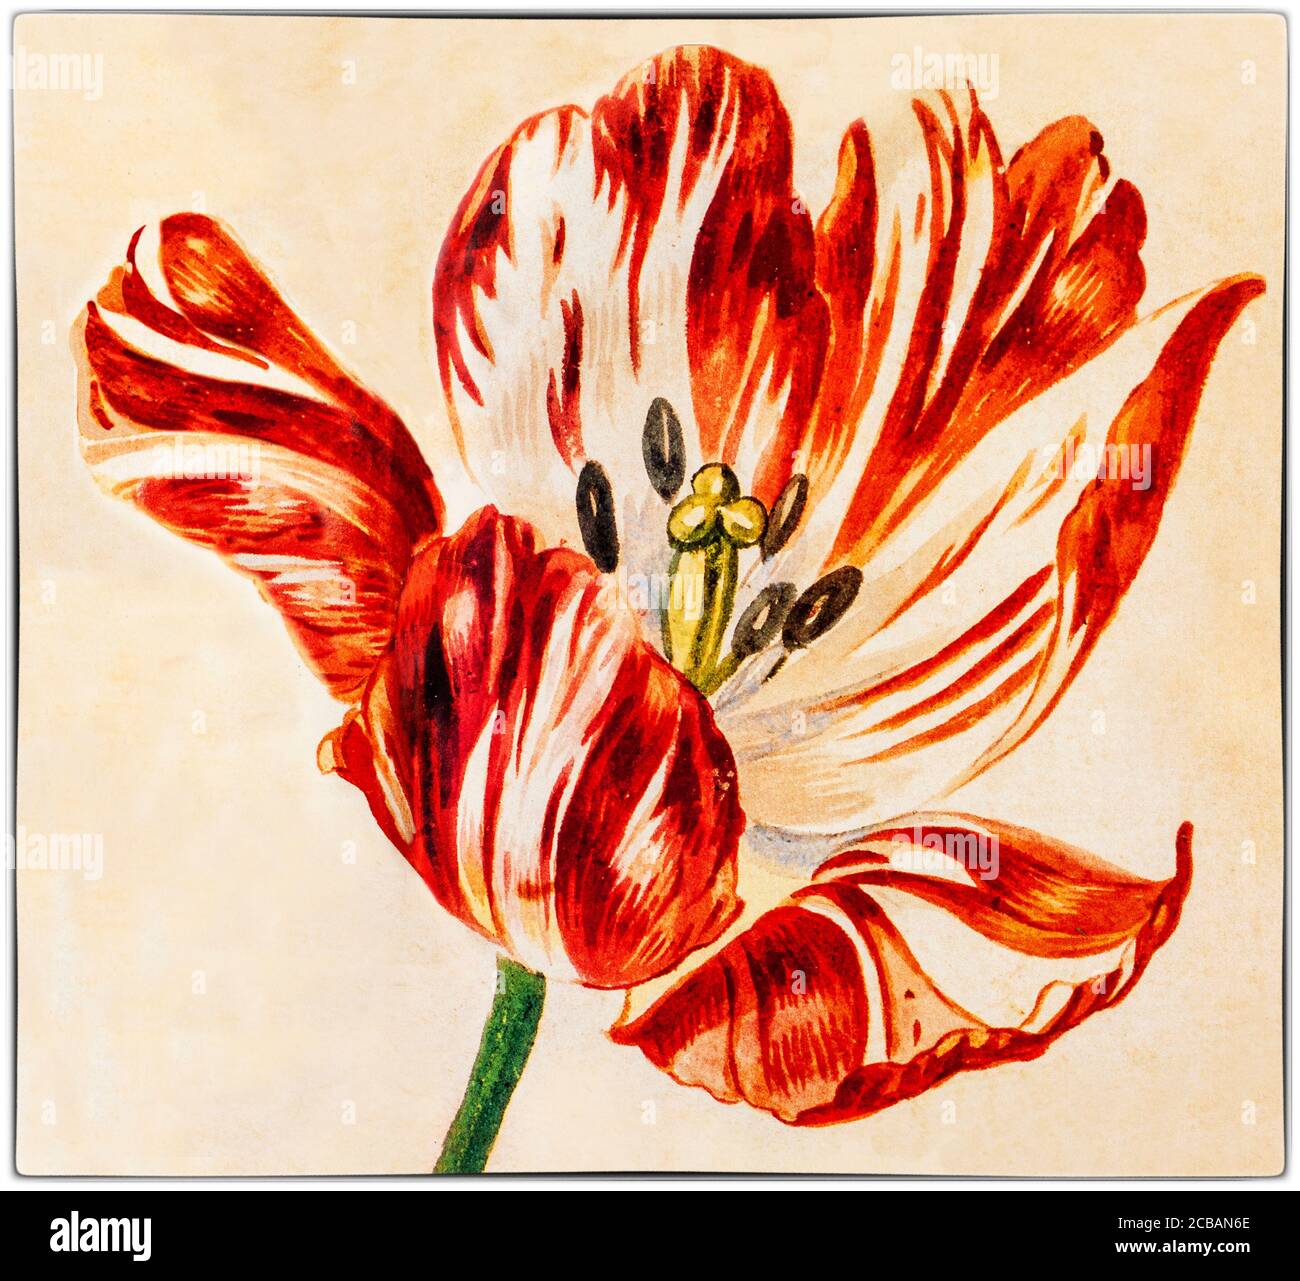 Tulipe « brisée » peinte par Jan van Huysum (1682-1749), un peintre hollandais. Les tulipes « brisées » ont une infection virale, qui a causé l'apparition de belles et saisissantes bandes de couleur dans les pétales, remarquées par le botaniste flamand Carolus Clusius, père de l'obsession hollandaise des tulipes, aux pays-Bas dans les années 1600. Banque D'Images